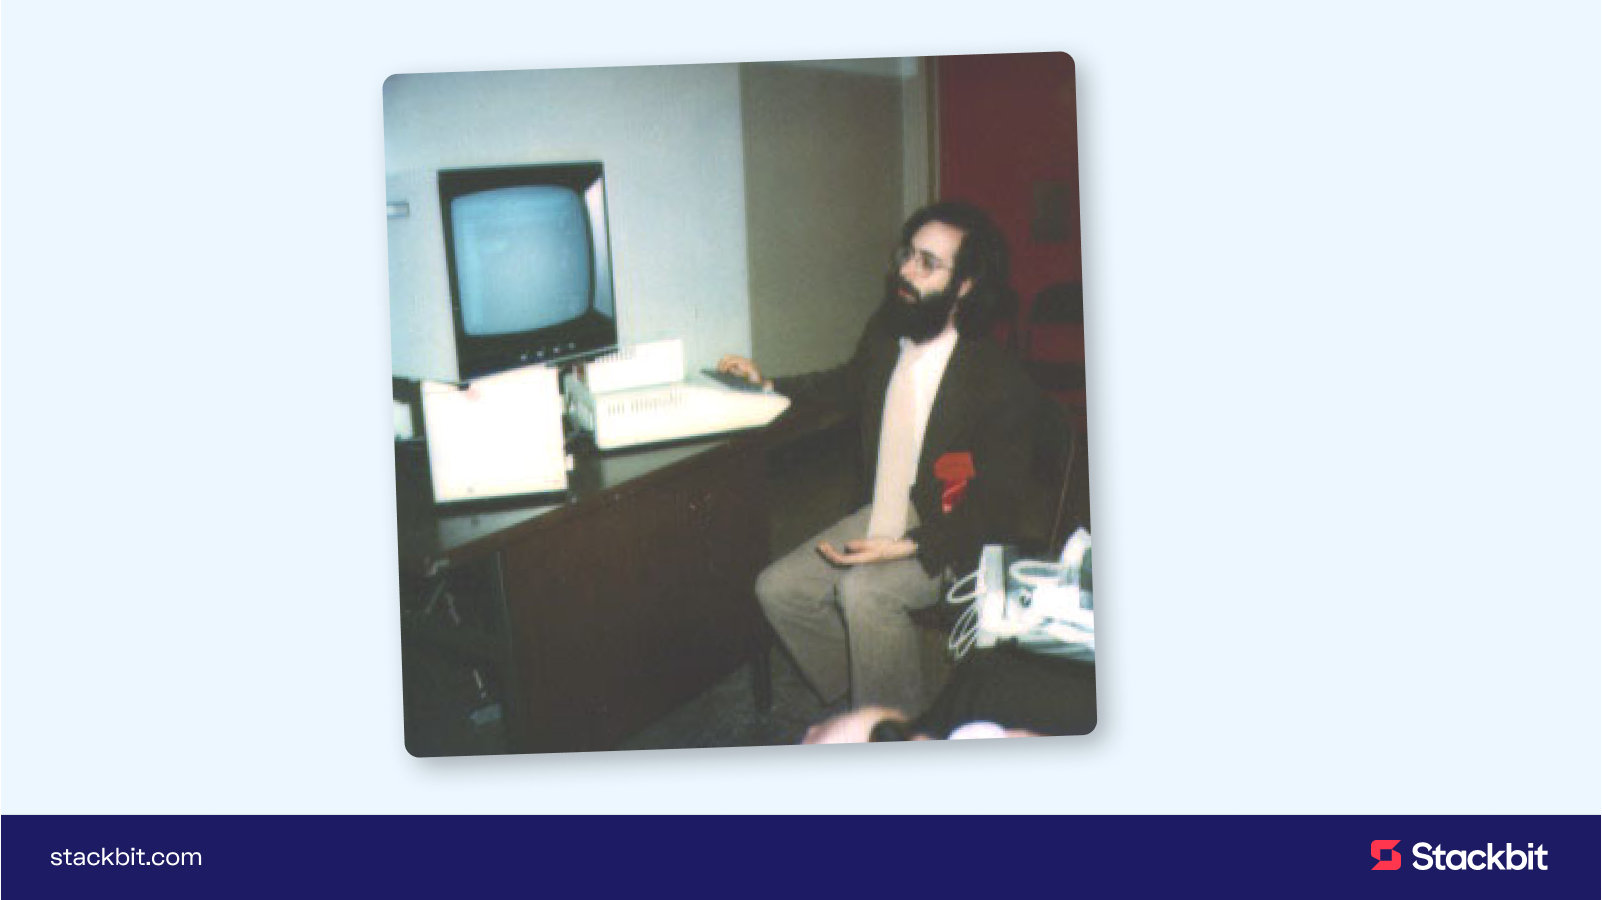 Dan Bricklin before debuting VisiCalc in Manhattan